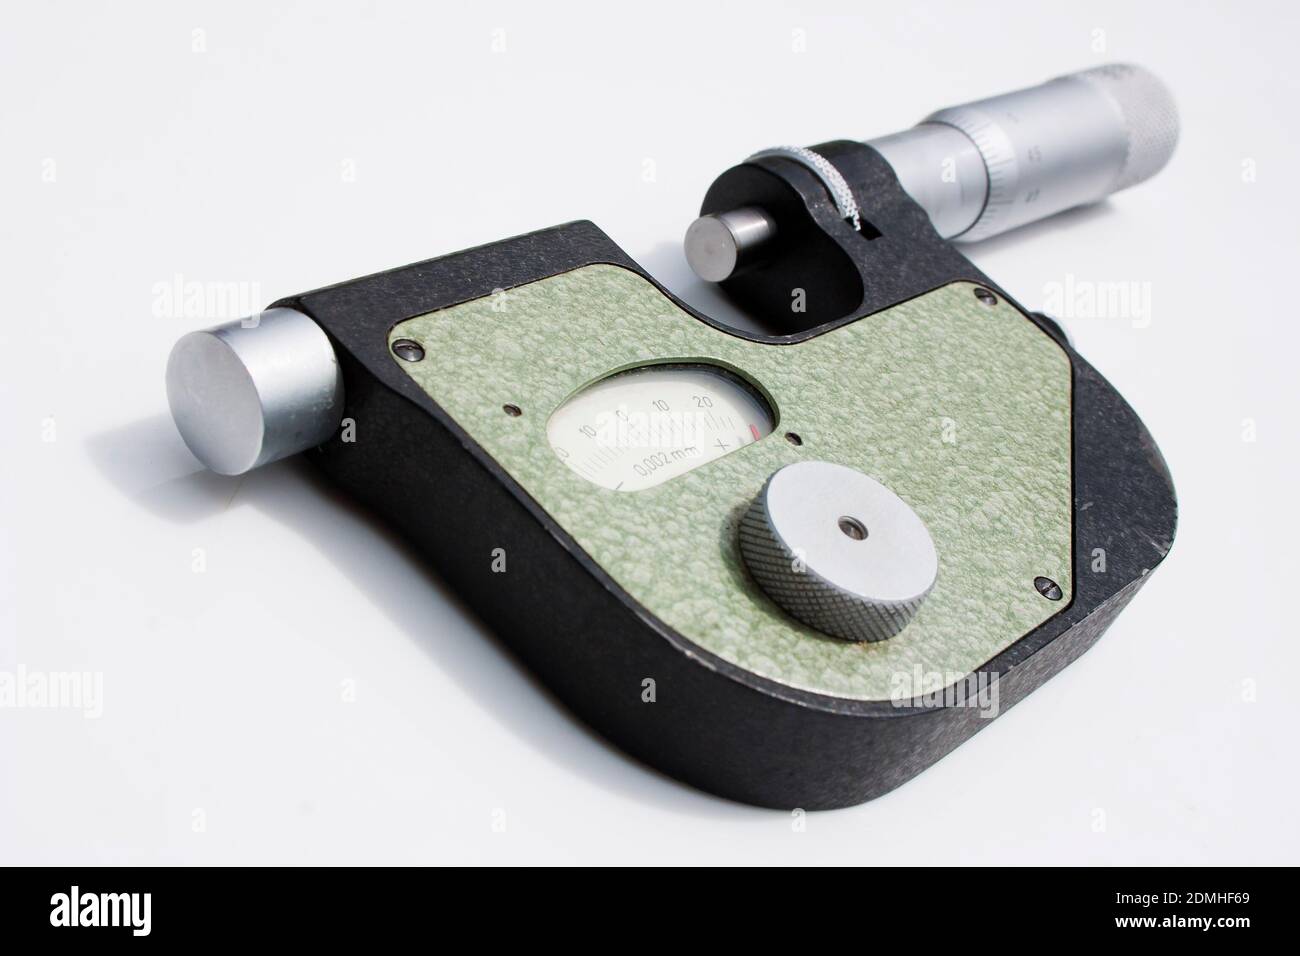 Dies ist ein Mikrometer. Präzises Messgerät - Mikrometer- oder Indikatorhalterung liegt auf einer weißen Oberfläche Stockfoto